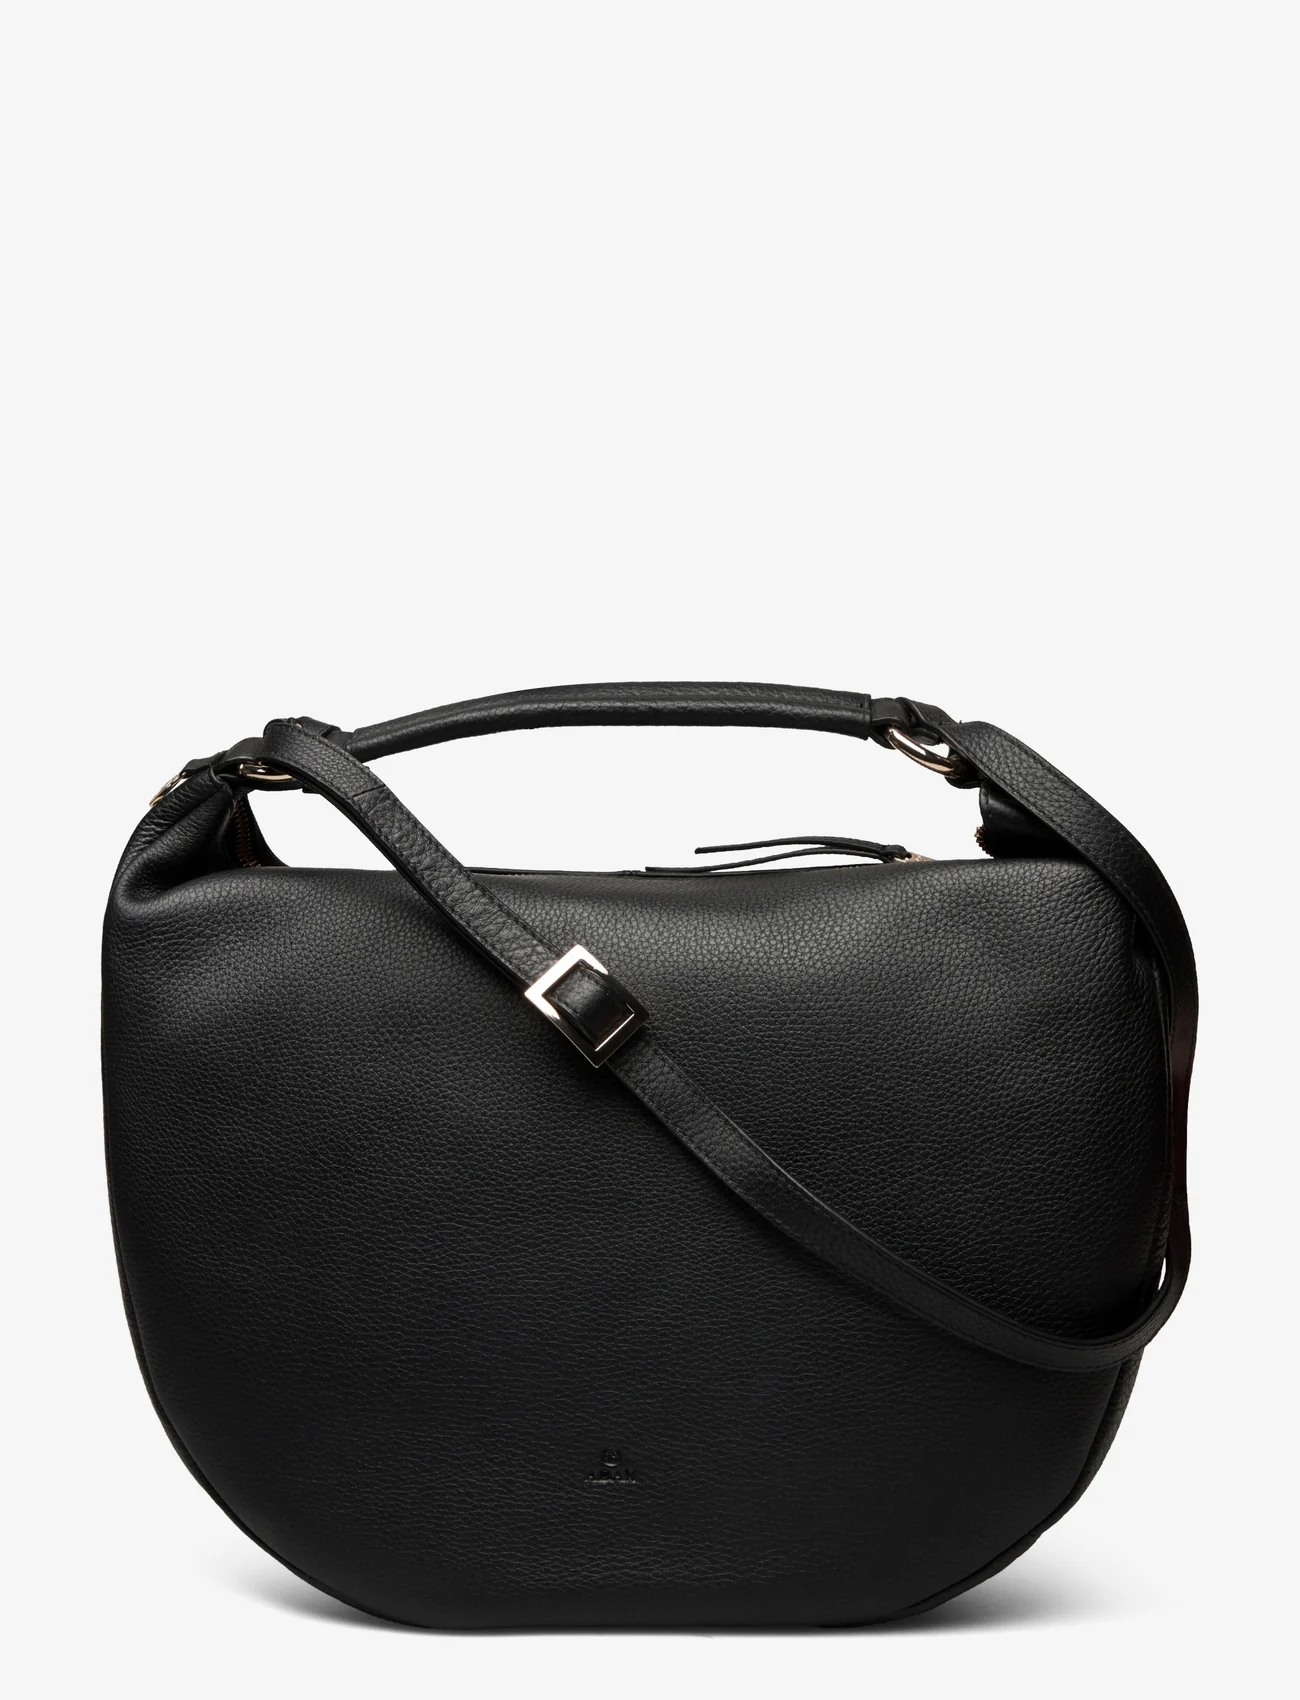 Adax - Cormorano shoulder bag Ida - vakarėlių drabužiai išparduotuvių kainomis - black - 0